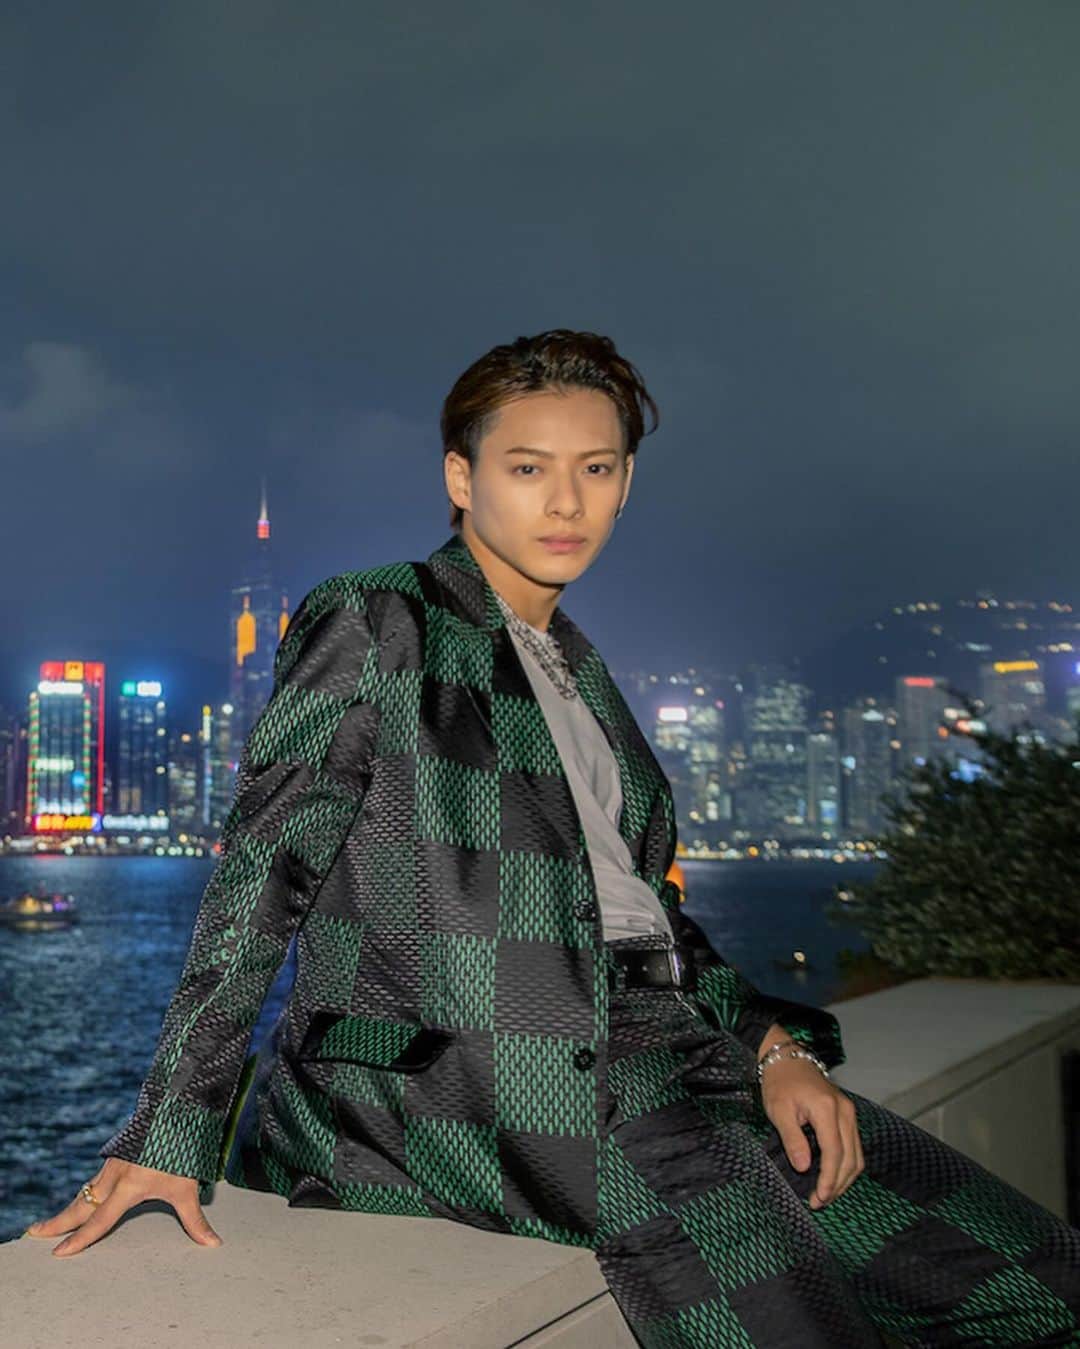 WWDジャパンのインスタグラム：「ファッション・ウイーク・スナップ：平野紫耀が香港でランウエイショーを鑑賞　「ルイ・ヴィトン」2024年プレ・フォール・メンズ・コレクション  「ルイ・ヴィトン（LOUIS VUITTON）」は11月30日、香港で2024年プレ・フォール・メンズ・コレクションを発表した。  同コレクションは、メンズ クリエイティブ・ディレクターのファレル・ウィリアムス（Pharrell Williams）が手掛ける2回目のショーとなる。会場には歌手の平野紫耀が、「ルイ・ヴィトン」24年春夏メンズ・コレクションのセットアップを着用して出席した。  ファッションショーへの出席が初めてとの平野は、「会場の装飾、登場したルック、そして最後の上空の演出まで、瞬きを忘れてしまうくらい素敵なショーでした。音楽とファッションが完璧にマッチしていて、その相乗効果に感動。どのルックも好みのものばかりでした。ファレル・ウィリアムスが生み出す新しいコレクションを観ることができ、終始魅了されました」と語った。  詳細は @wwd_jp プロフィールのリンクから  #LOUISVUITTON#ルイヴィトン#fashion#fashioncollection#fashionshow#平野紫耀#ShoHirano#hiranosho#香港  #Hongkong#LVMenPreFall24#PharrellWillians#numberi#lv」